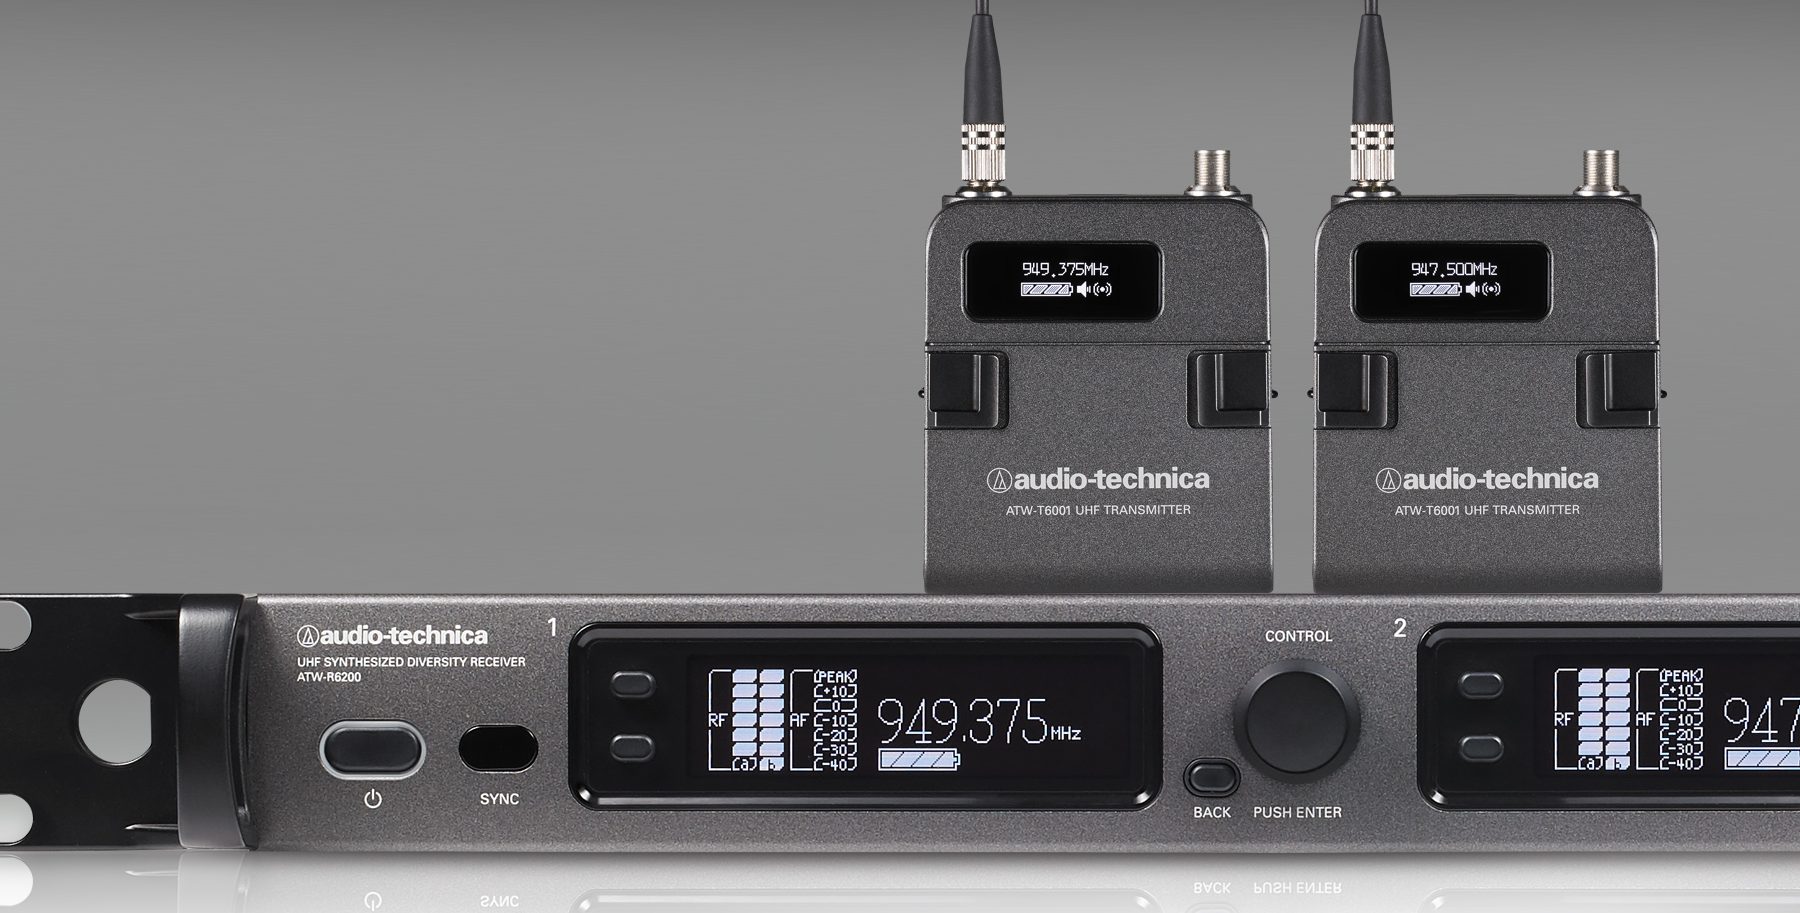 Audio-Technica anuncia la disponibilidad del nuevo sistema